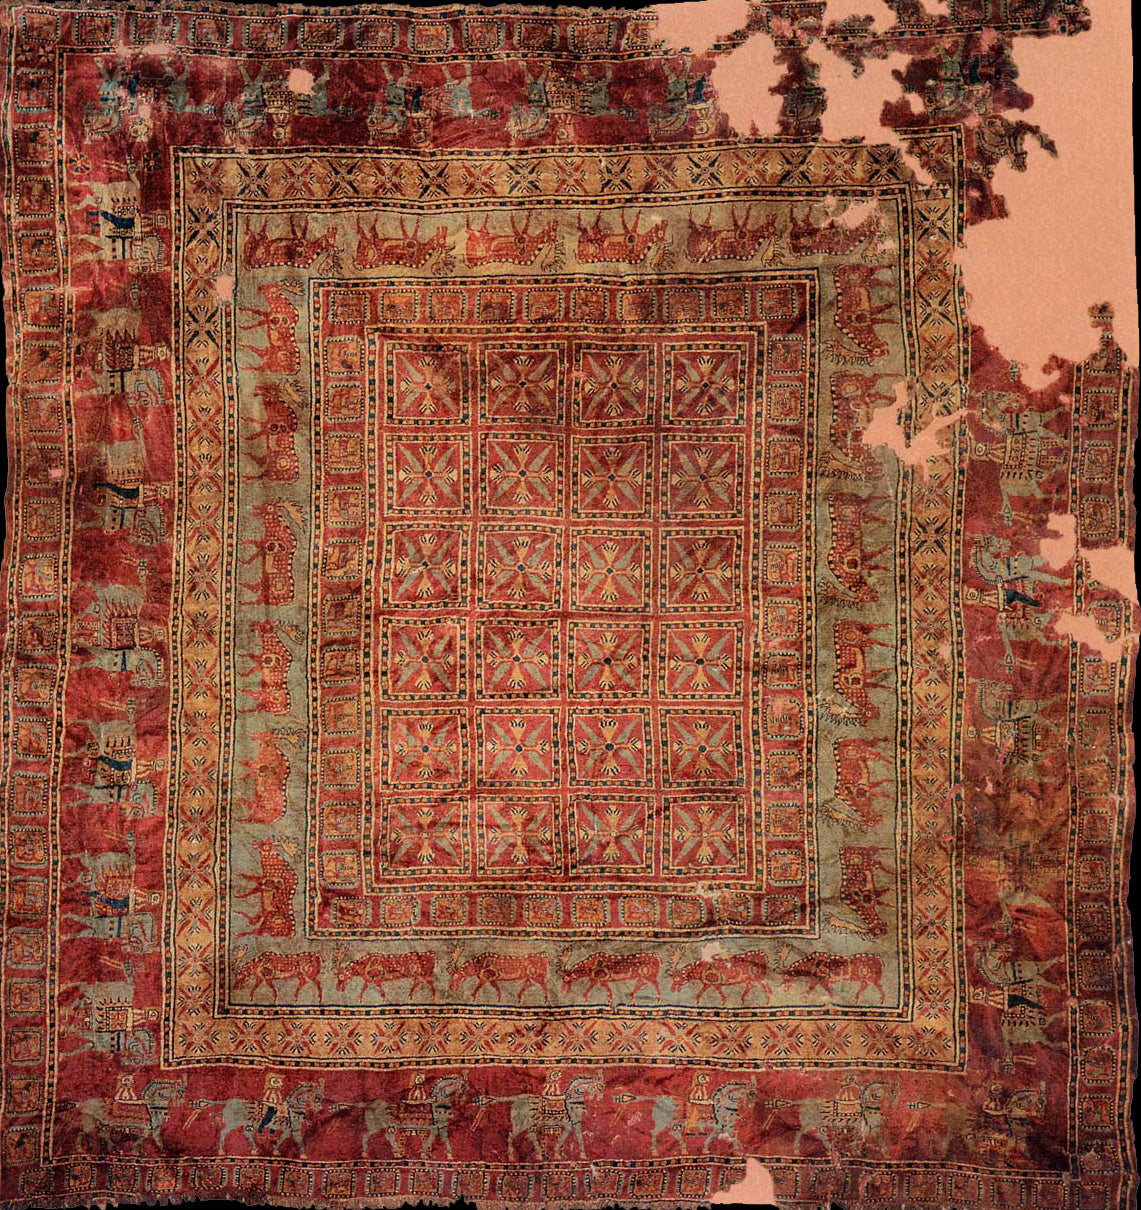 Le tapis Pazyryk le plus vieux tapis tufté à la main du monde d'origine perse.